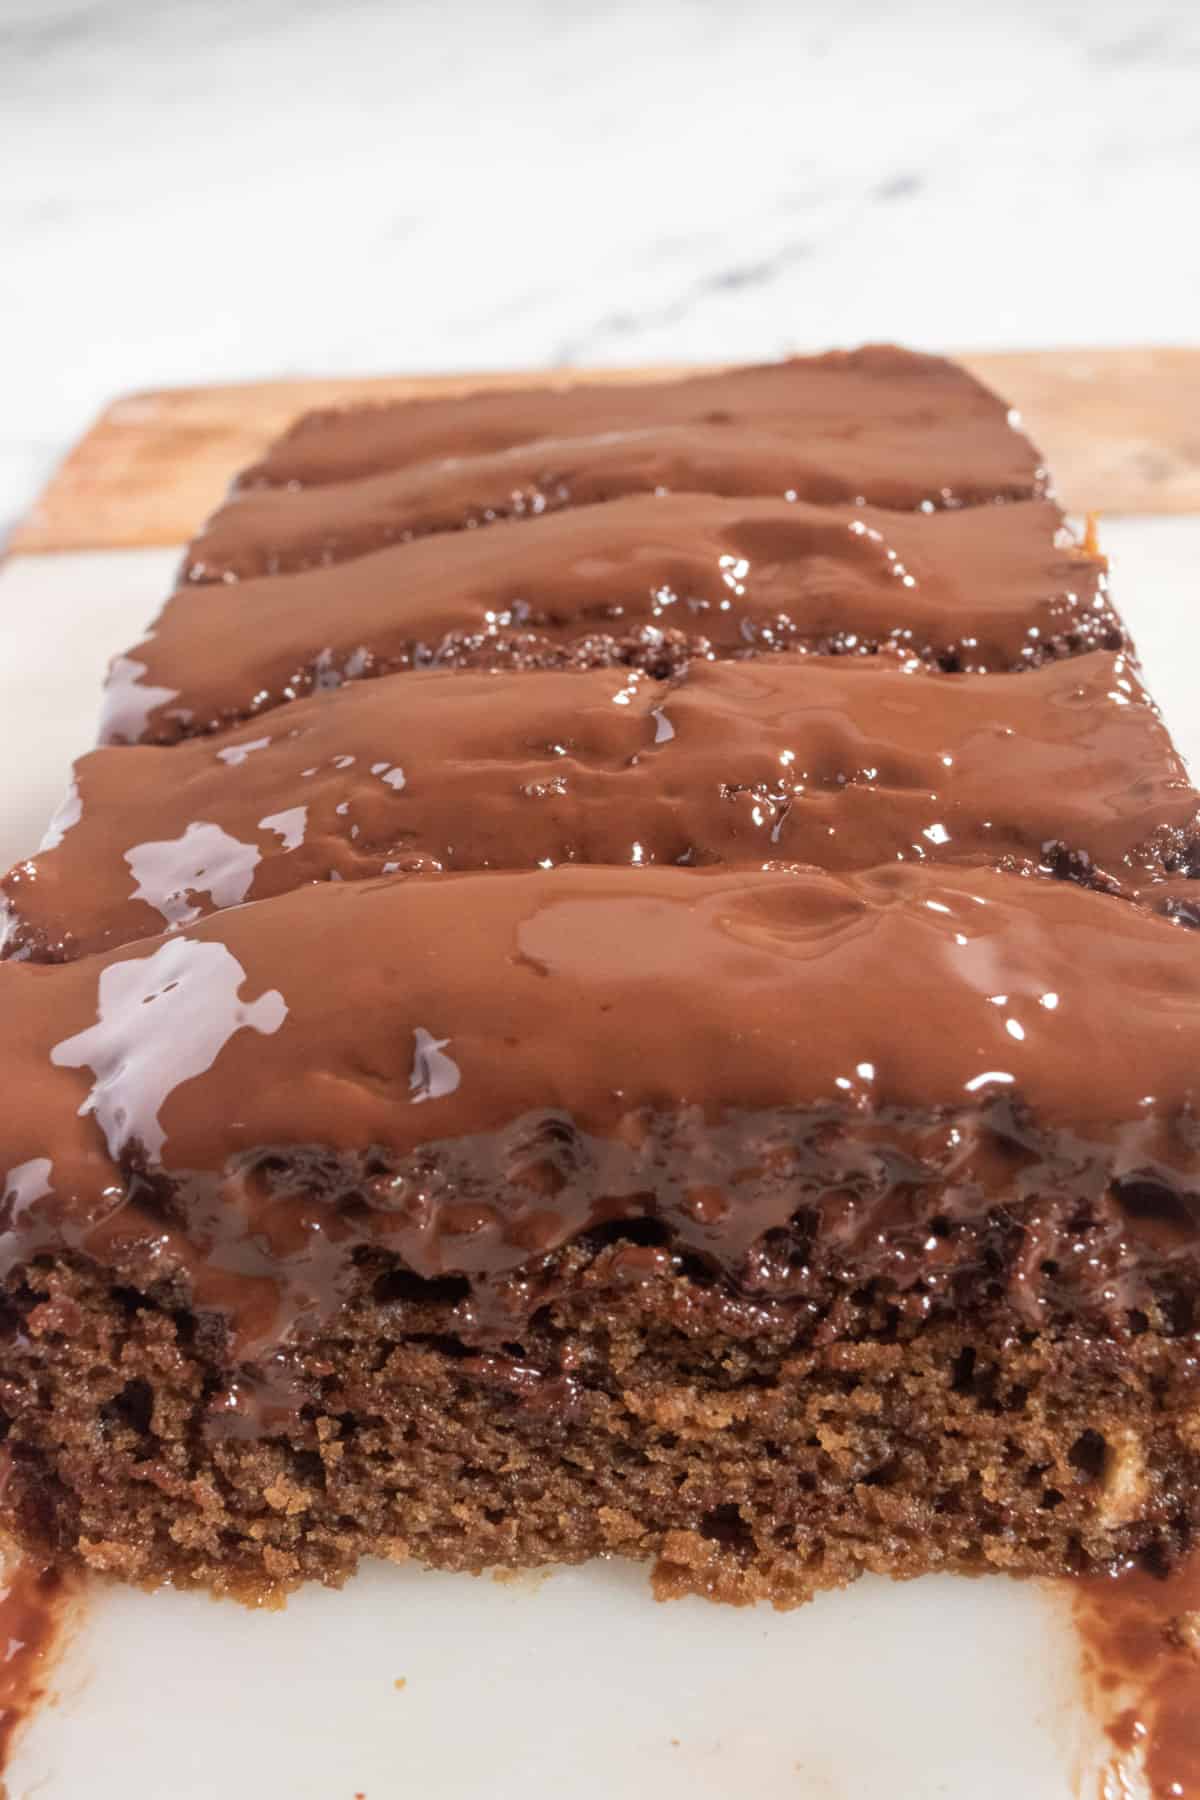 A whole loaf of chocolate mocha cake. The glaze has a shine to it.